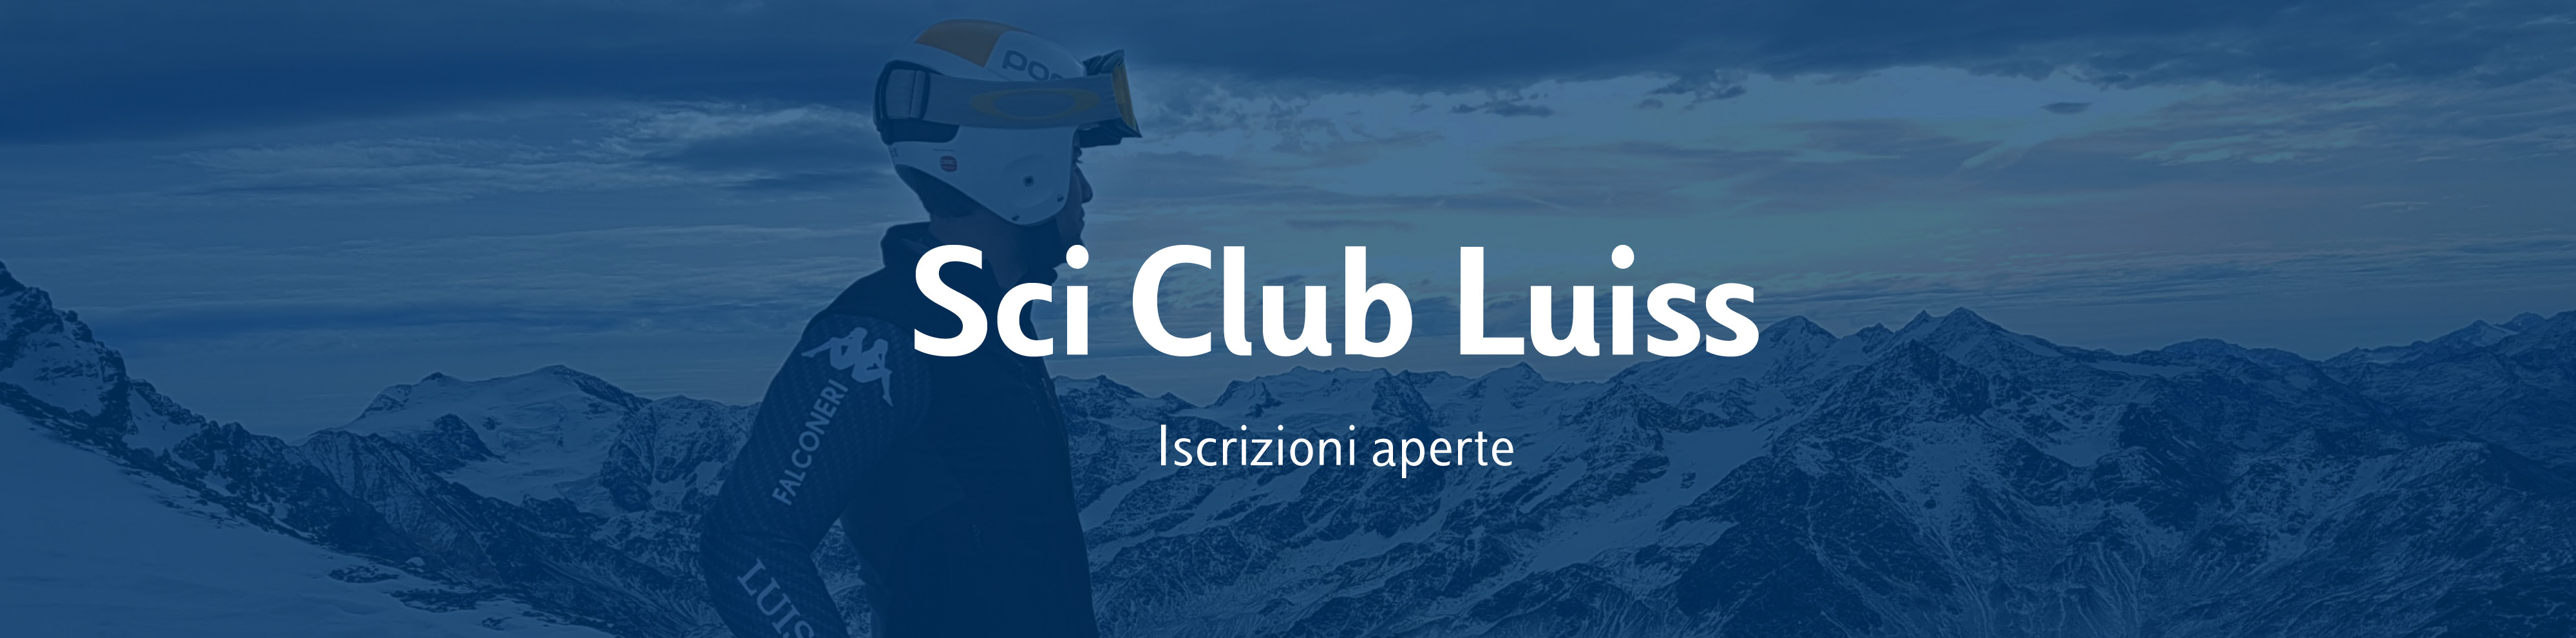 Sci Club